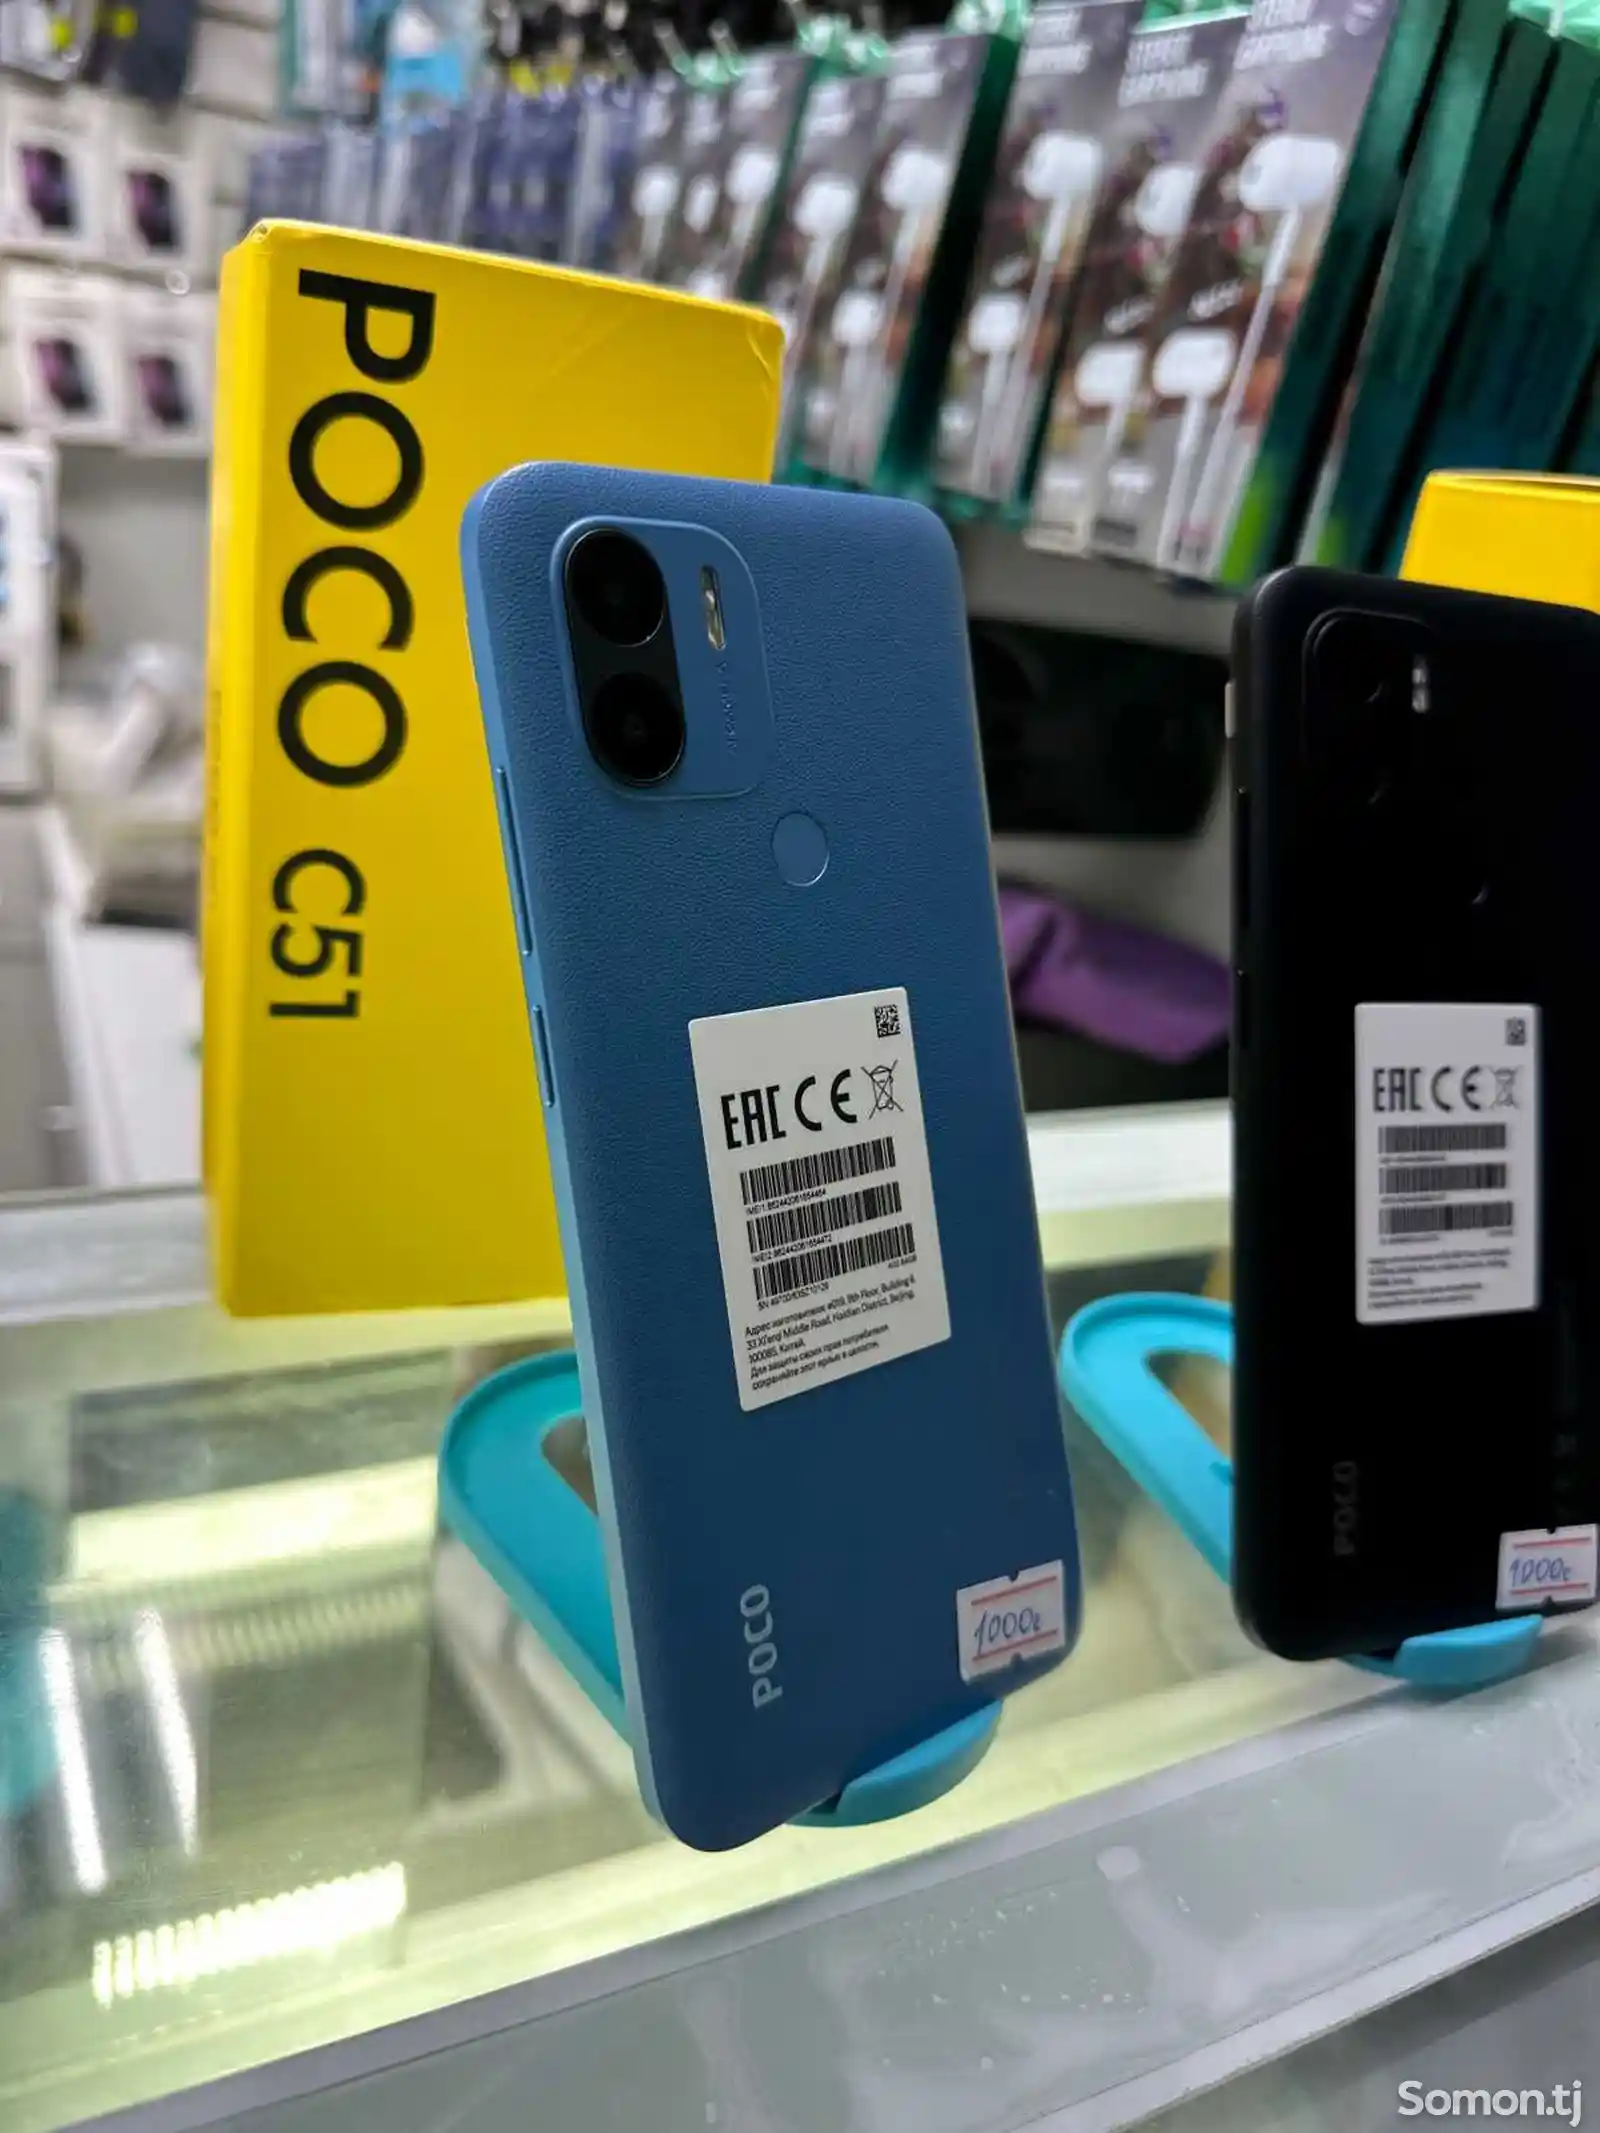 Xiaomi Poco C51-3